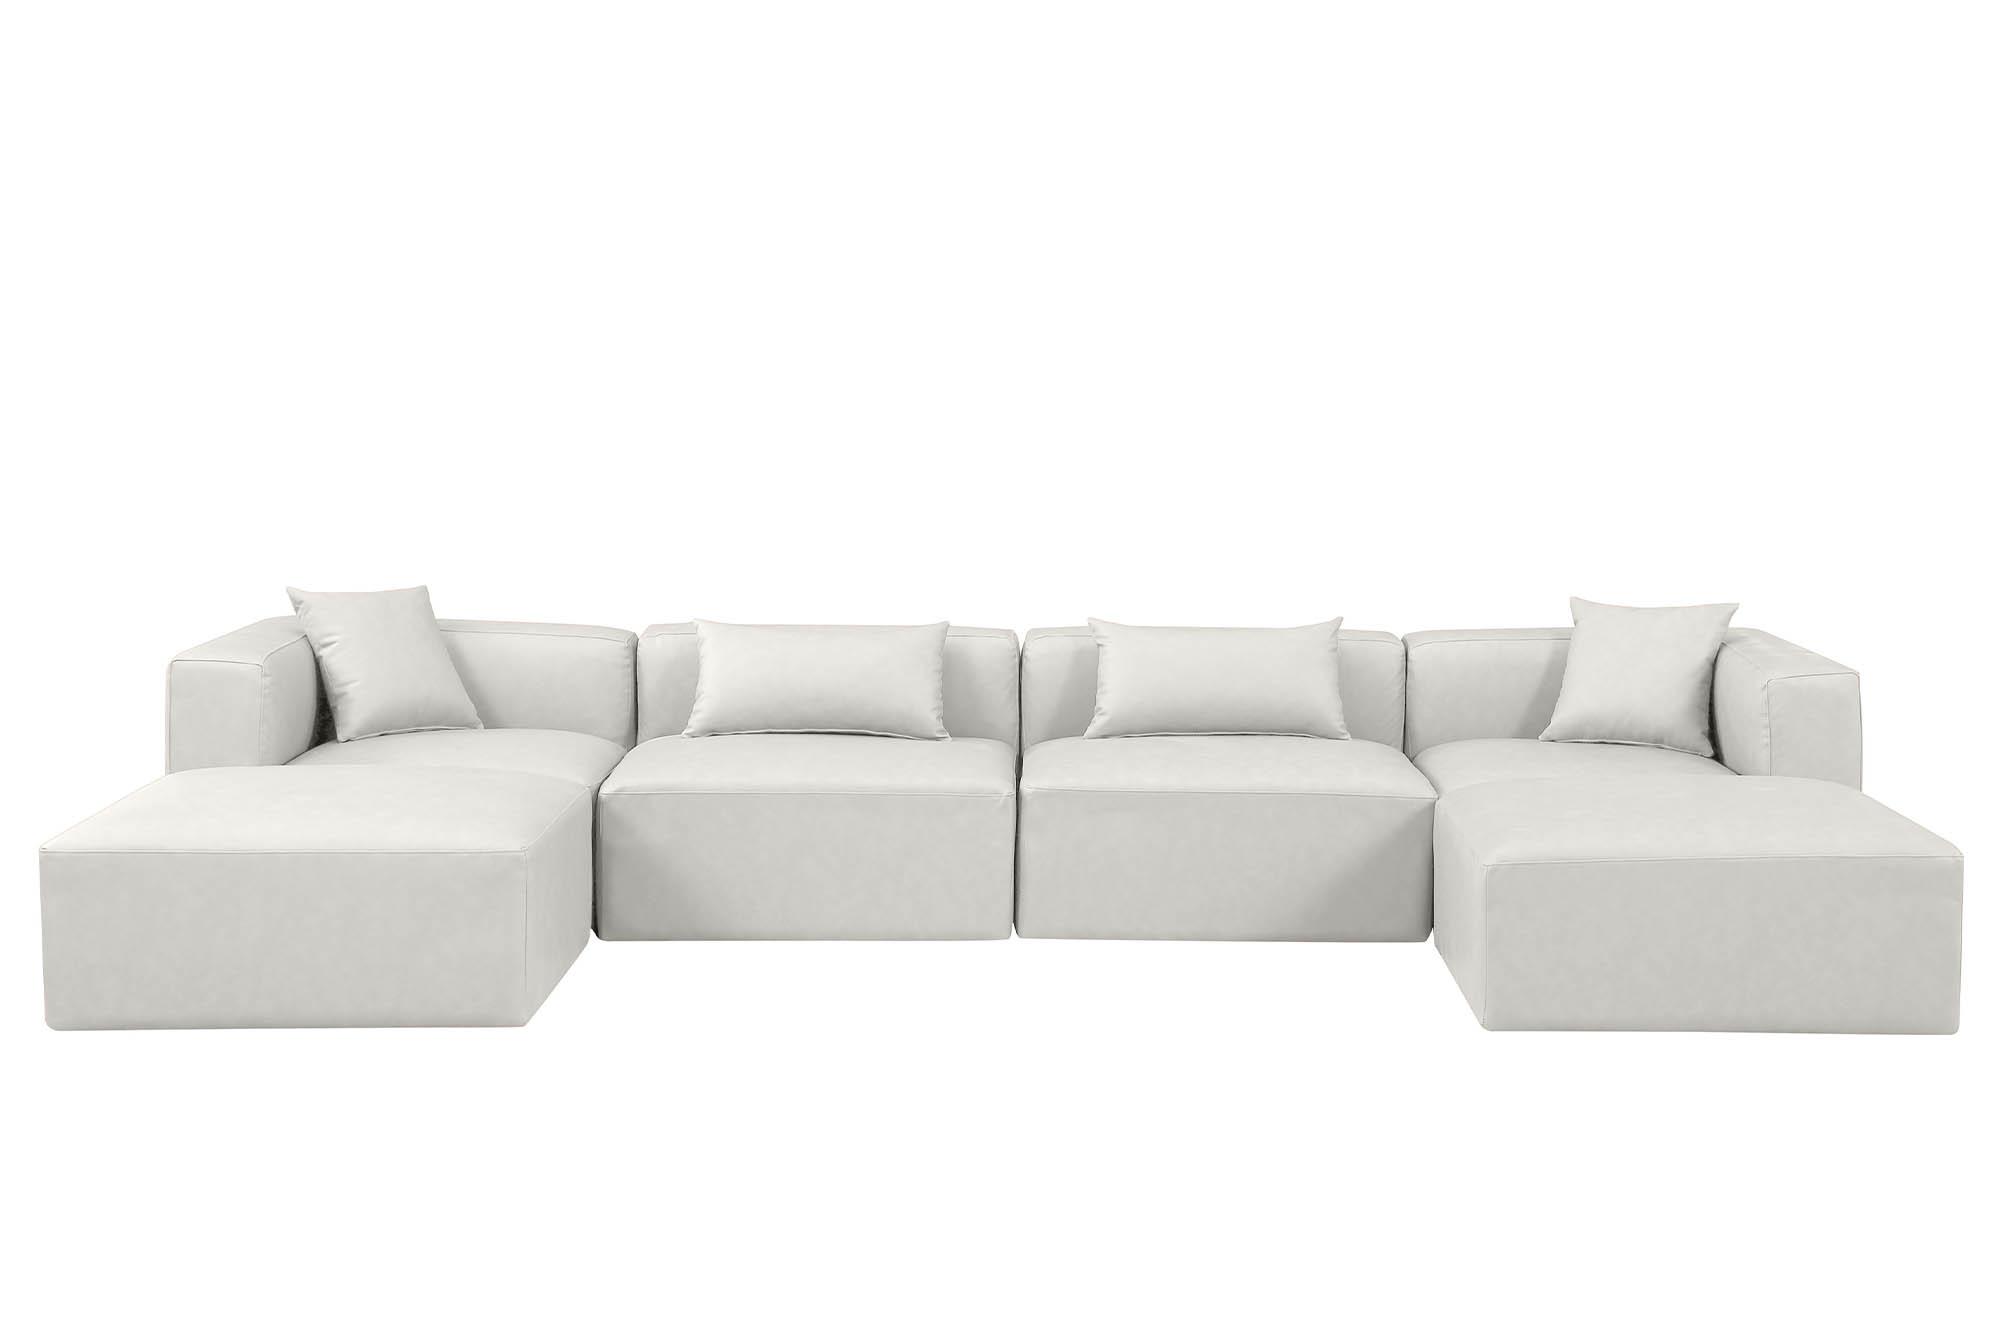 

    
Meridian Furniture CUBE 668Cream-Sec6B Modular Sectional Sofa Cream 668Cream-Sec6B
